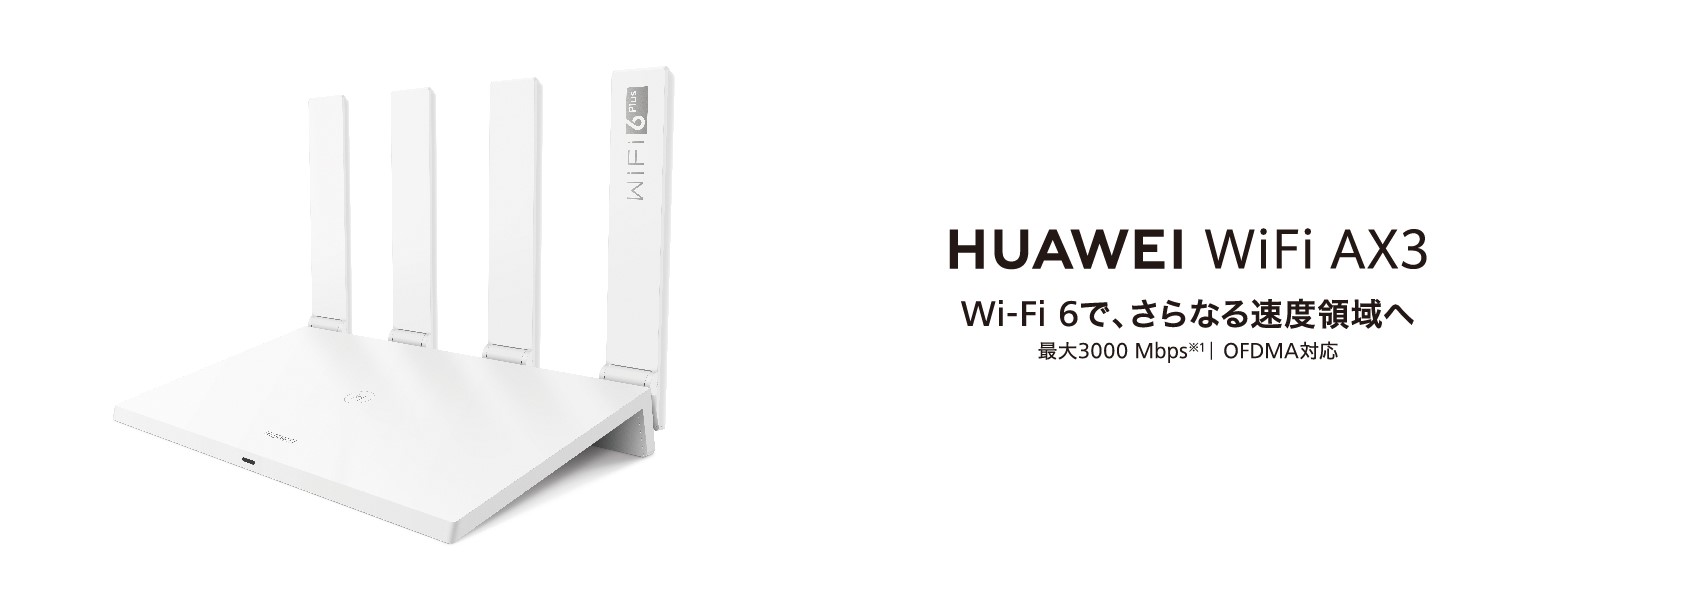 Wi-Fi 6（11ax）/6 Plusに対応した無線LANルーターに新ラインアップが ...